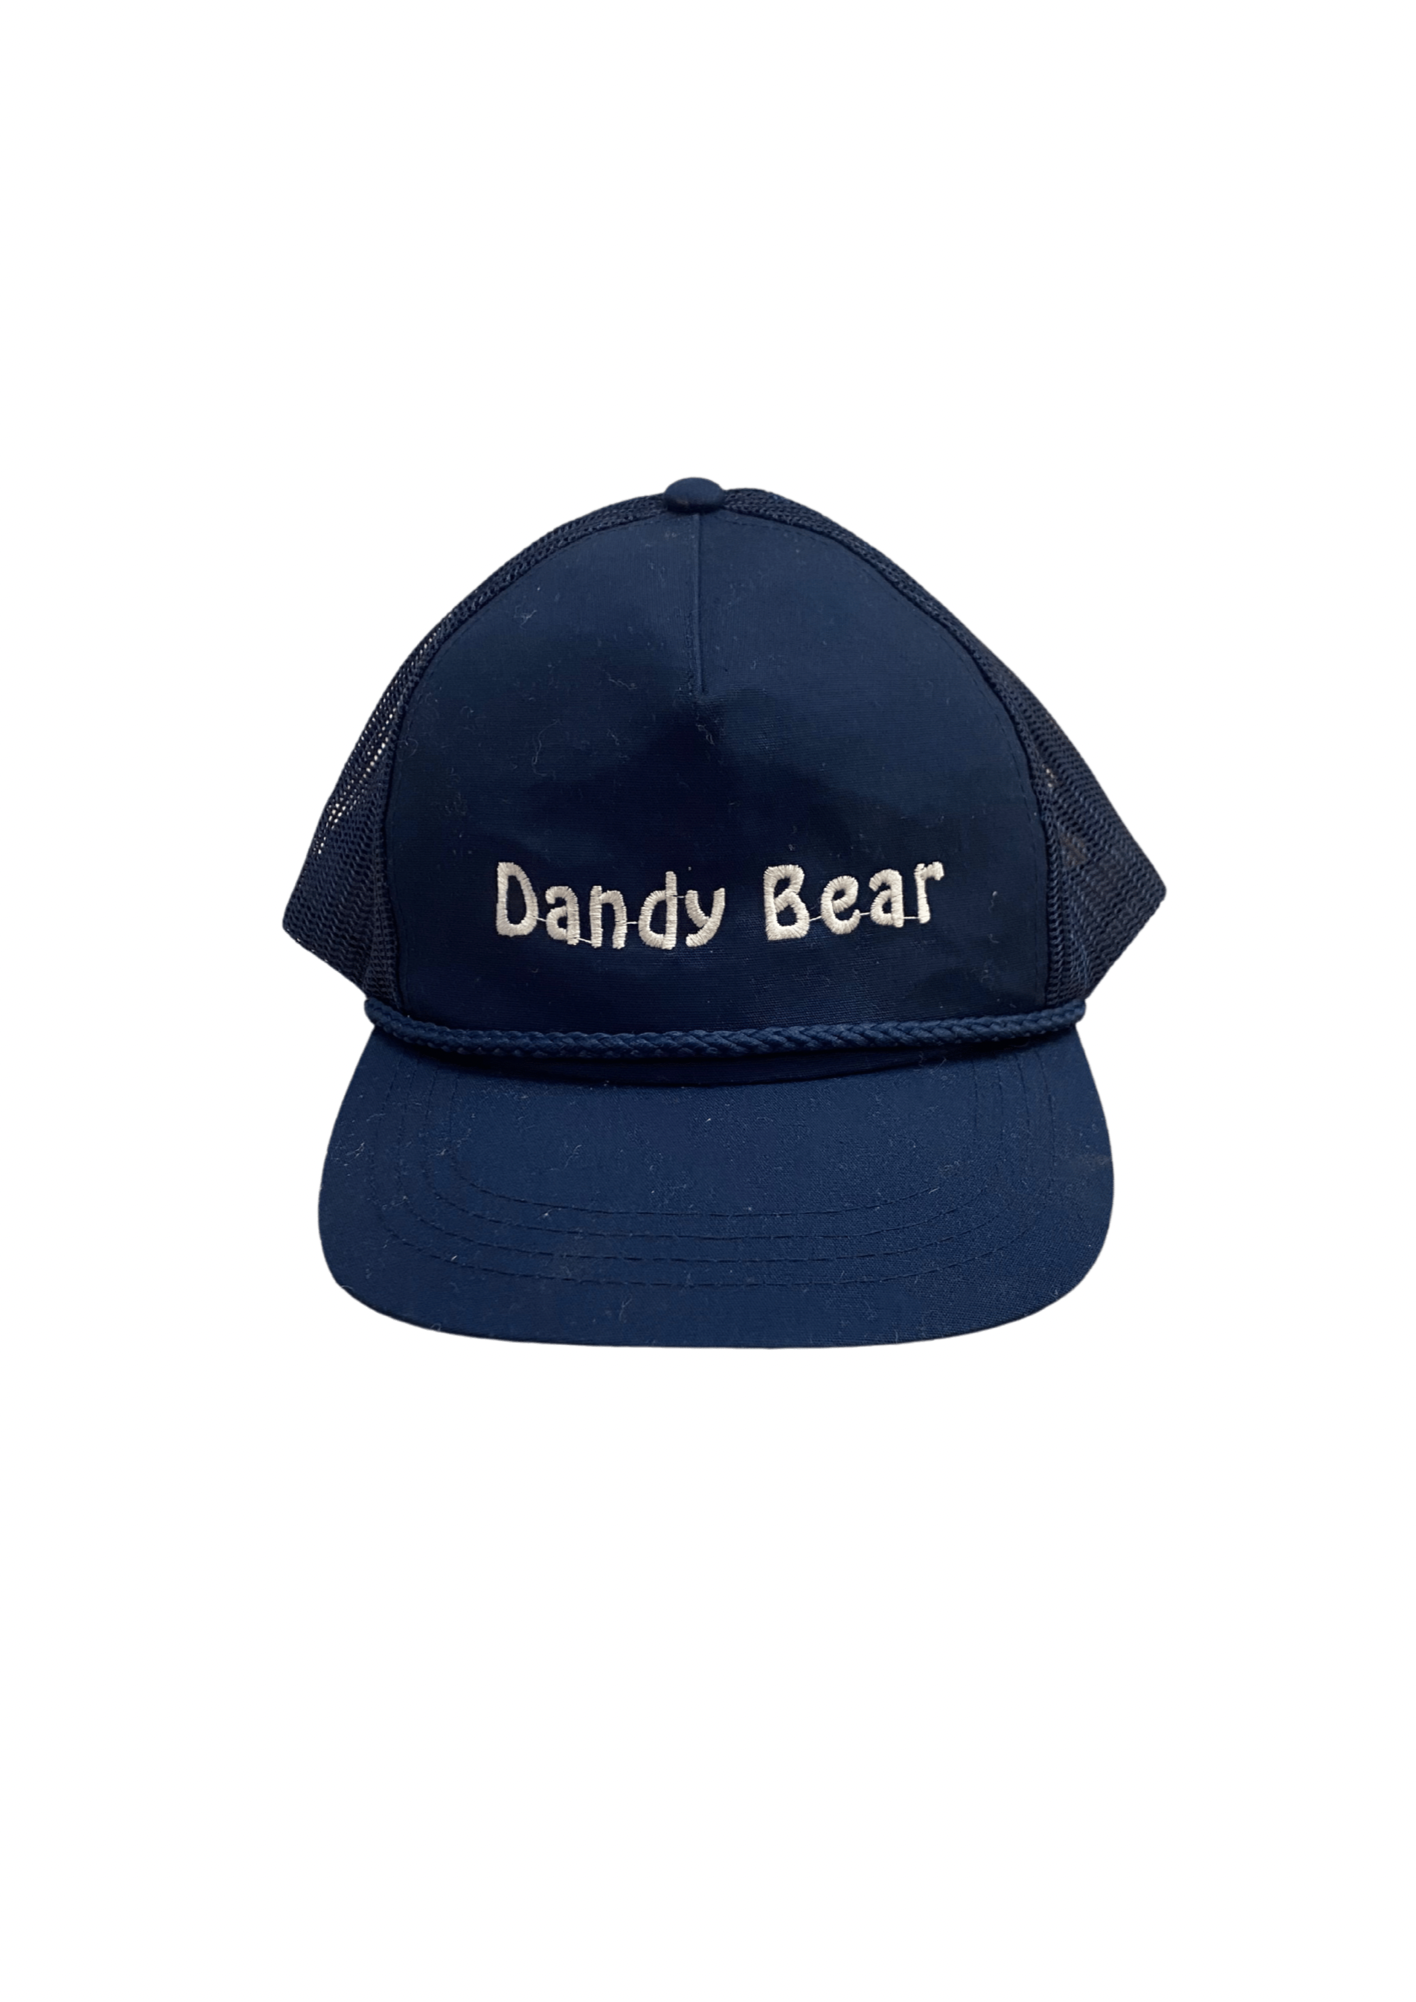 Dandy Bear Trucker Hat